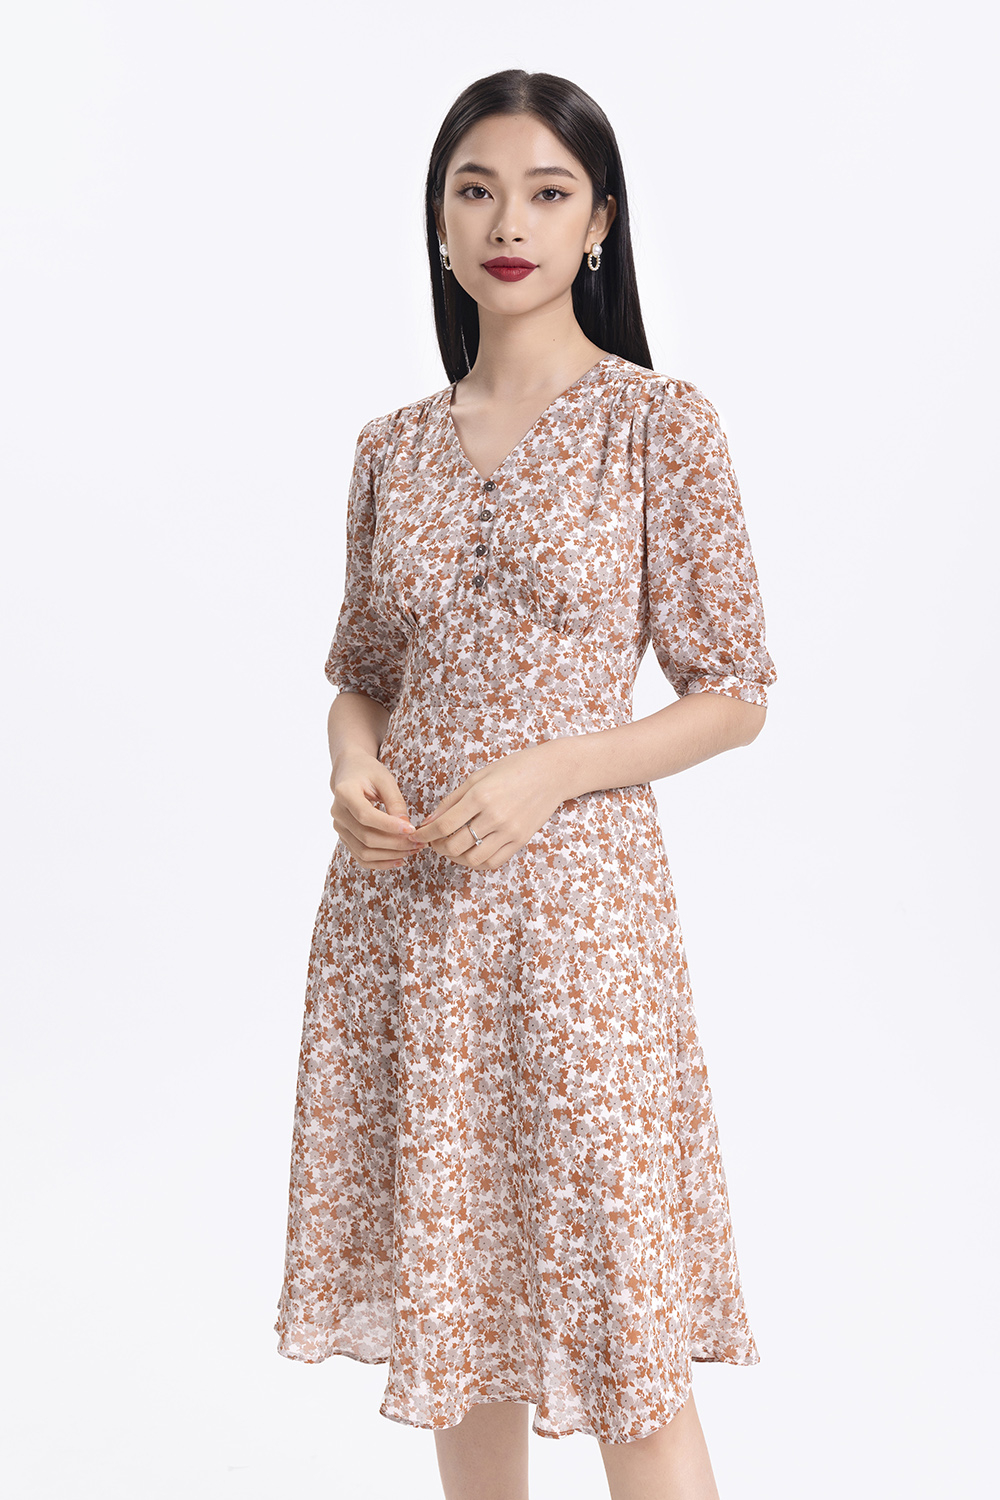 Đầm xòe hoa nhí tay lỡ eo cao KK109-10 | Thời trang công sở K&K ...